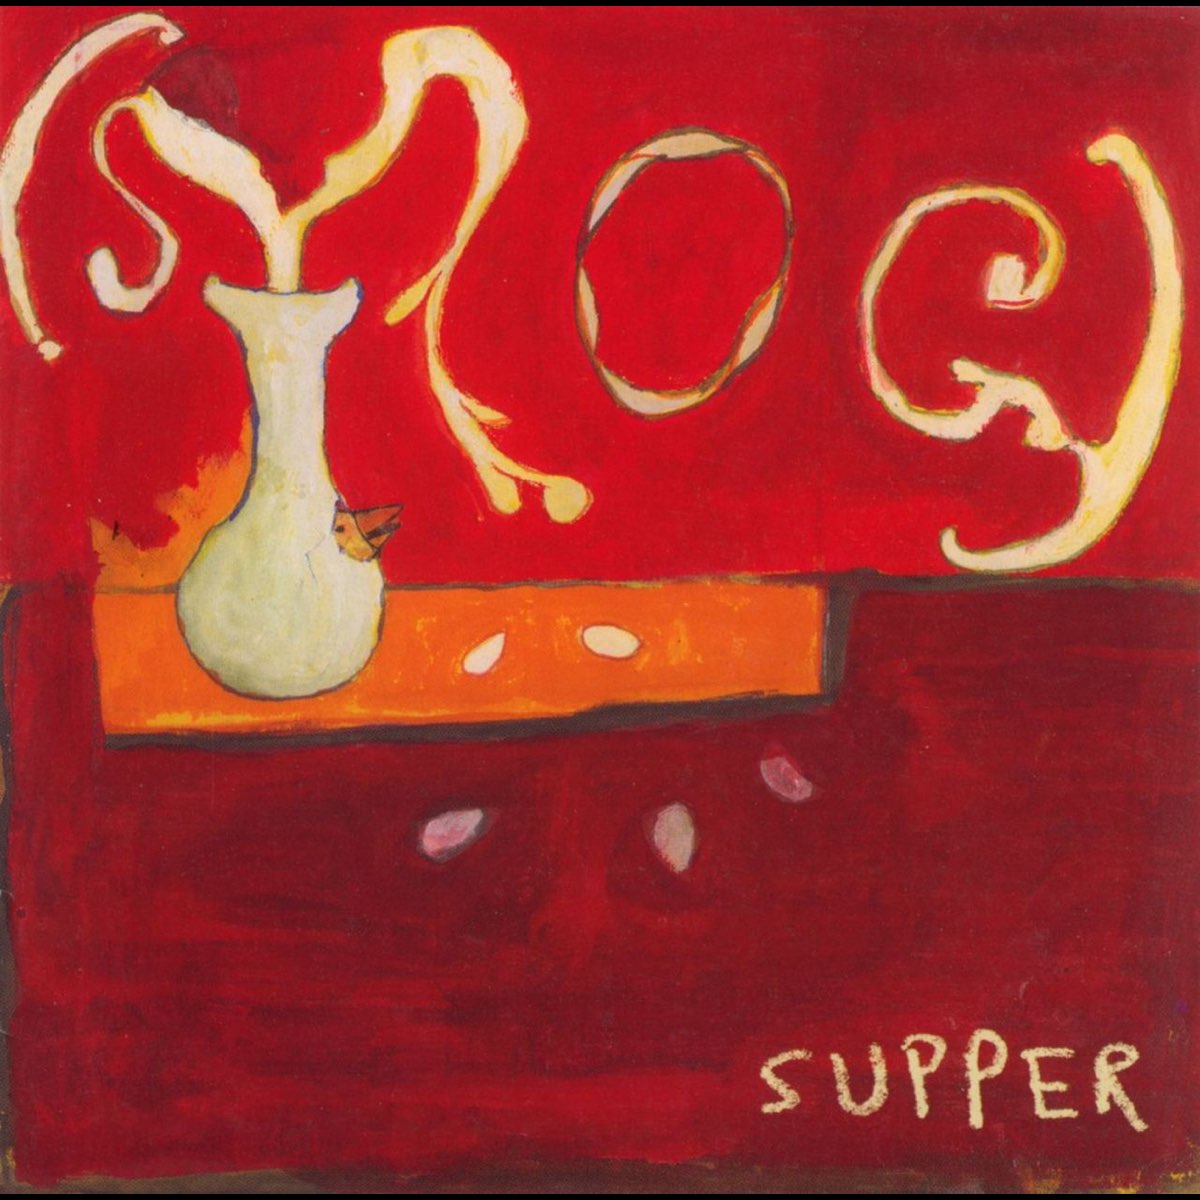 Smog: Supper (Vinyl LP)